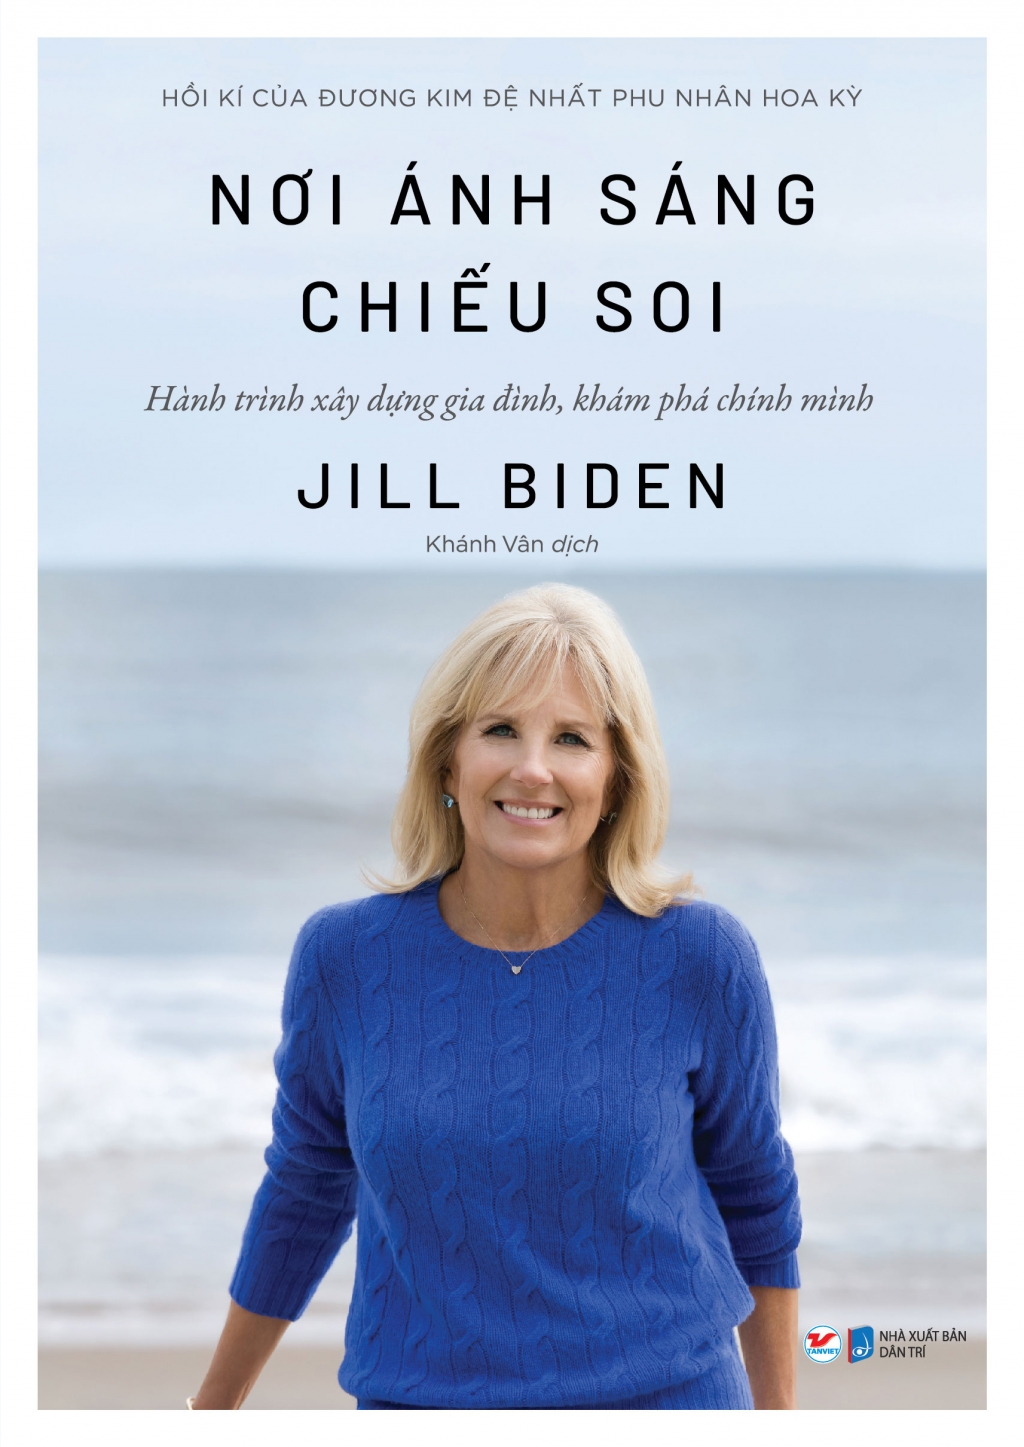 Xuất bản cuốn hồi kí của đương kim Đệ nhất phu nhân Hoa Kỳ Jill Biden